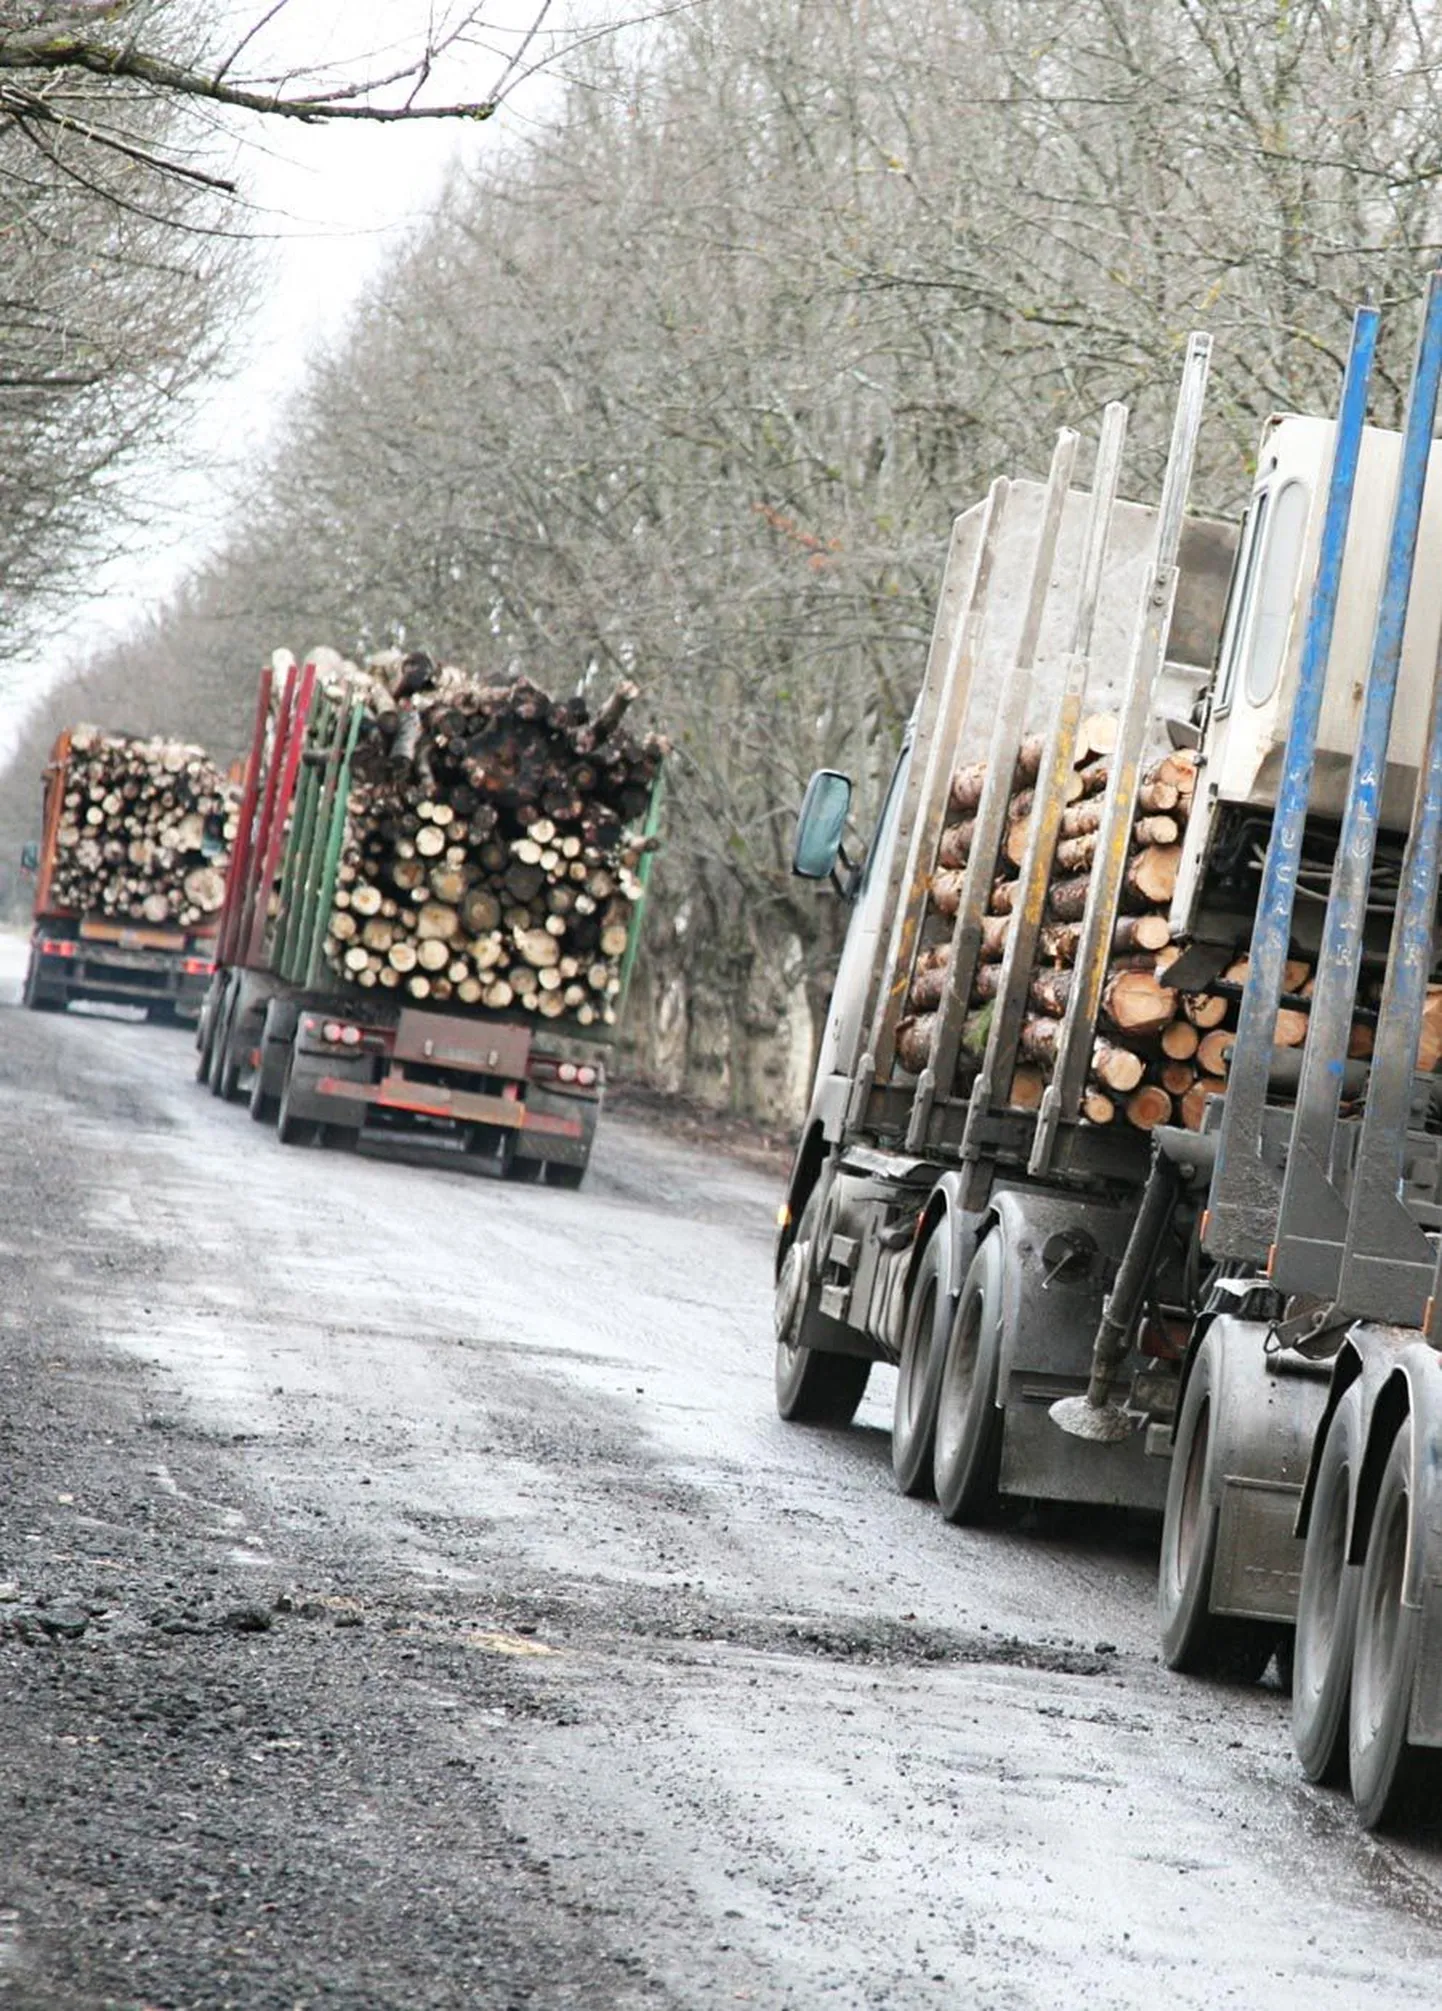 Metsaveoautod sõidavad enamasti raskema koormaga, kui seadus lubab.